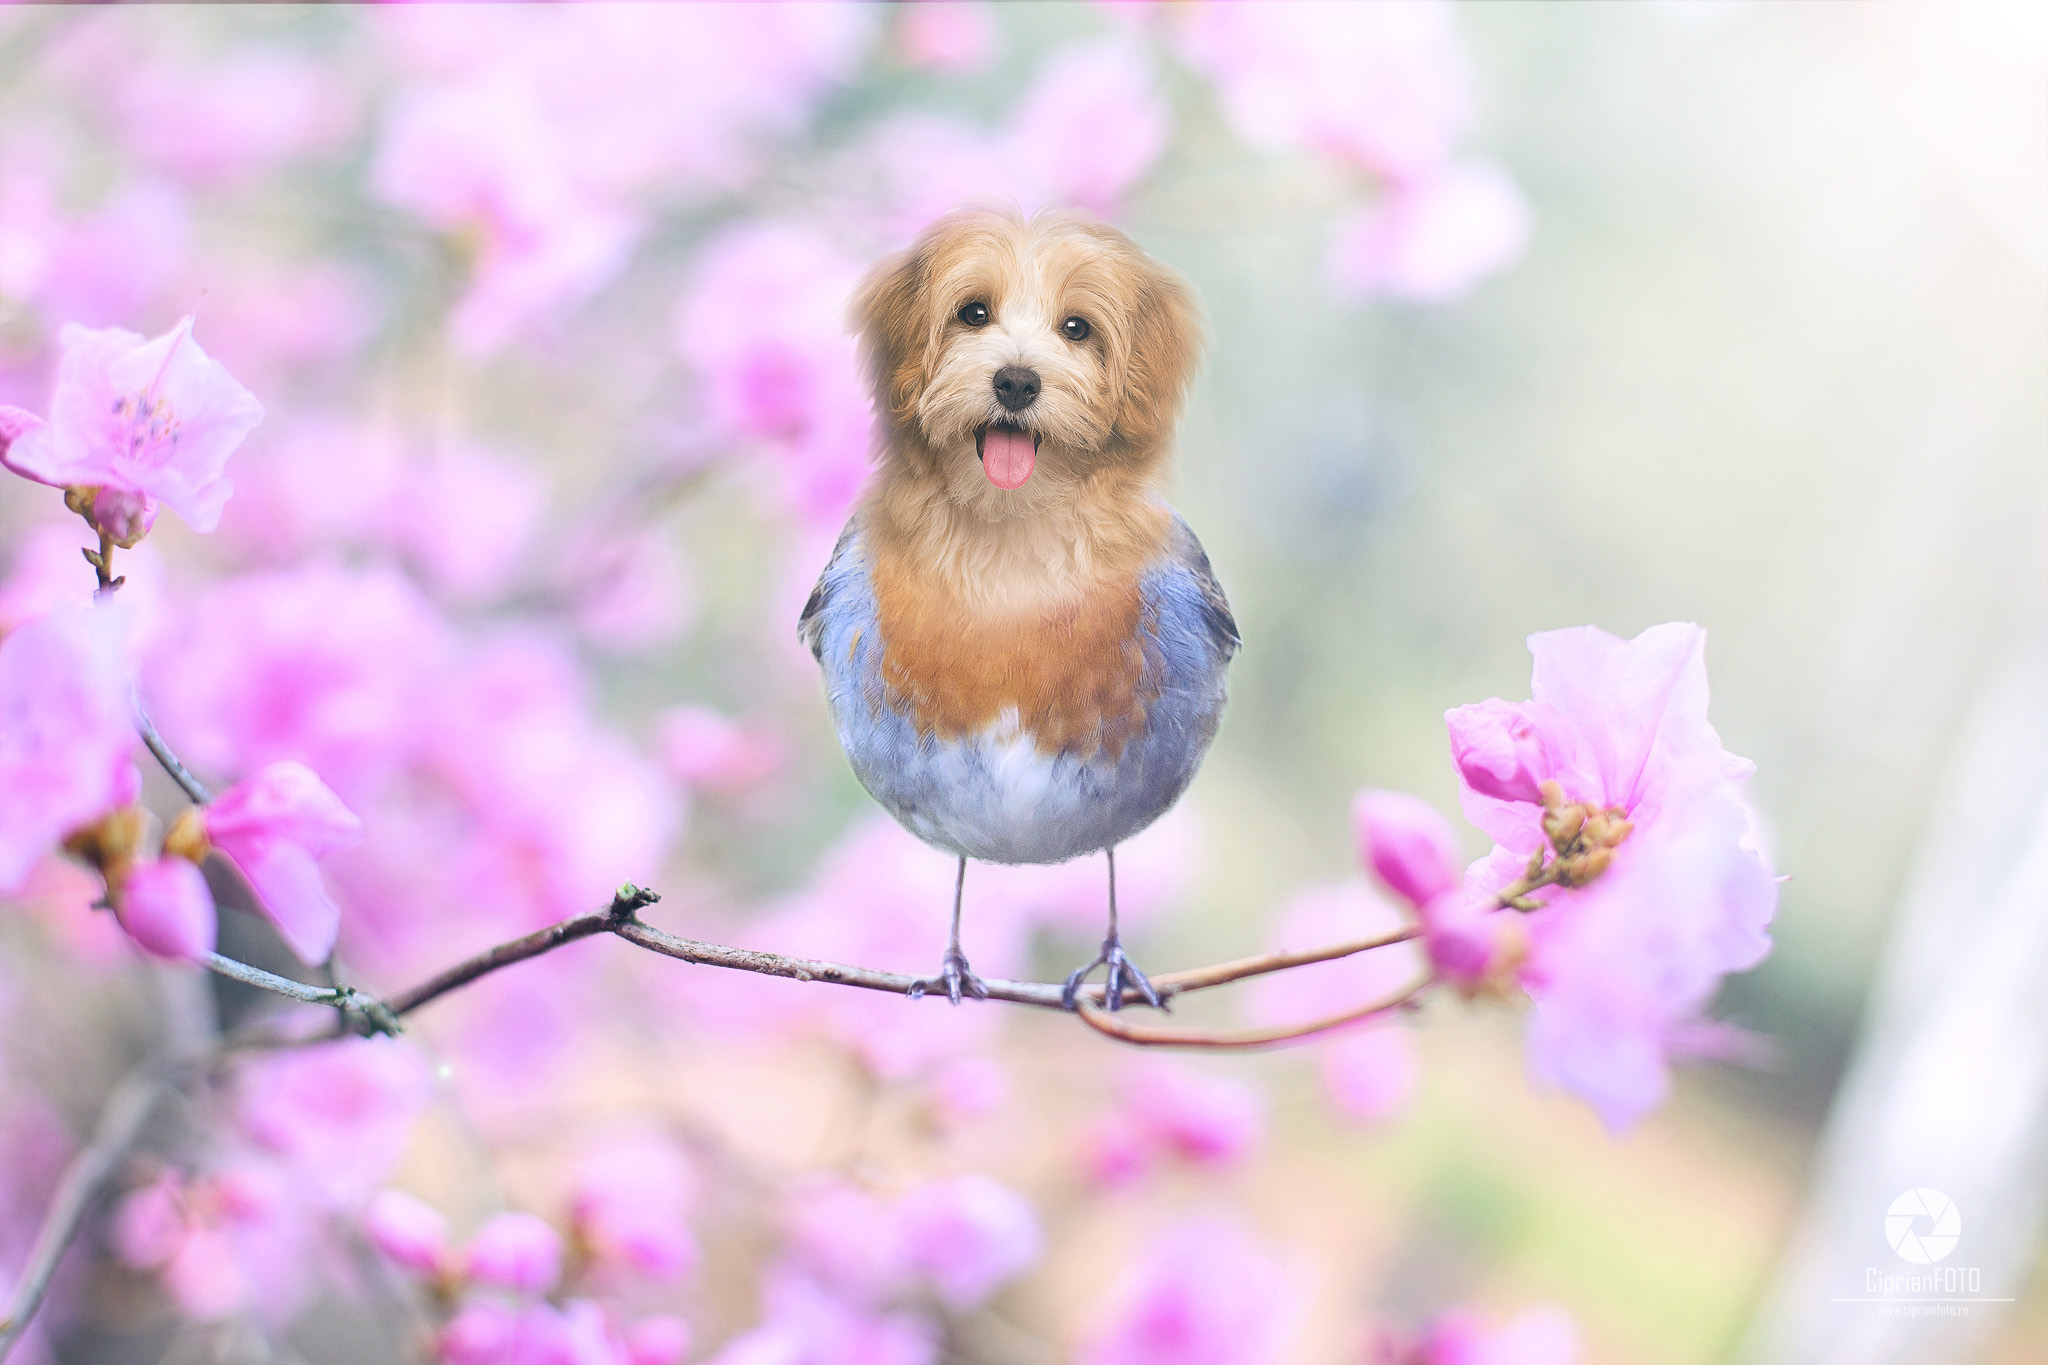 Bird-Dog, Surreal Photoshop Manipulation Tutorial, Surreal Fine Art, CiprianFOTO